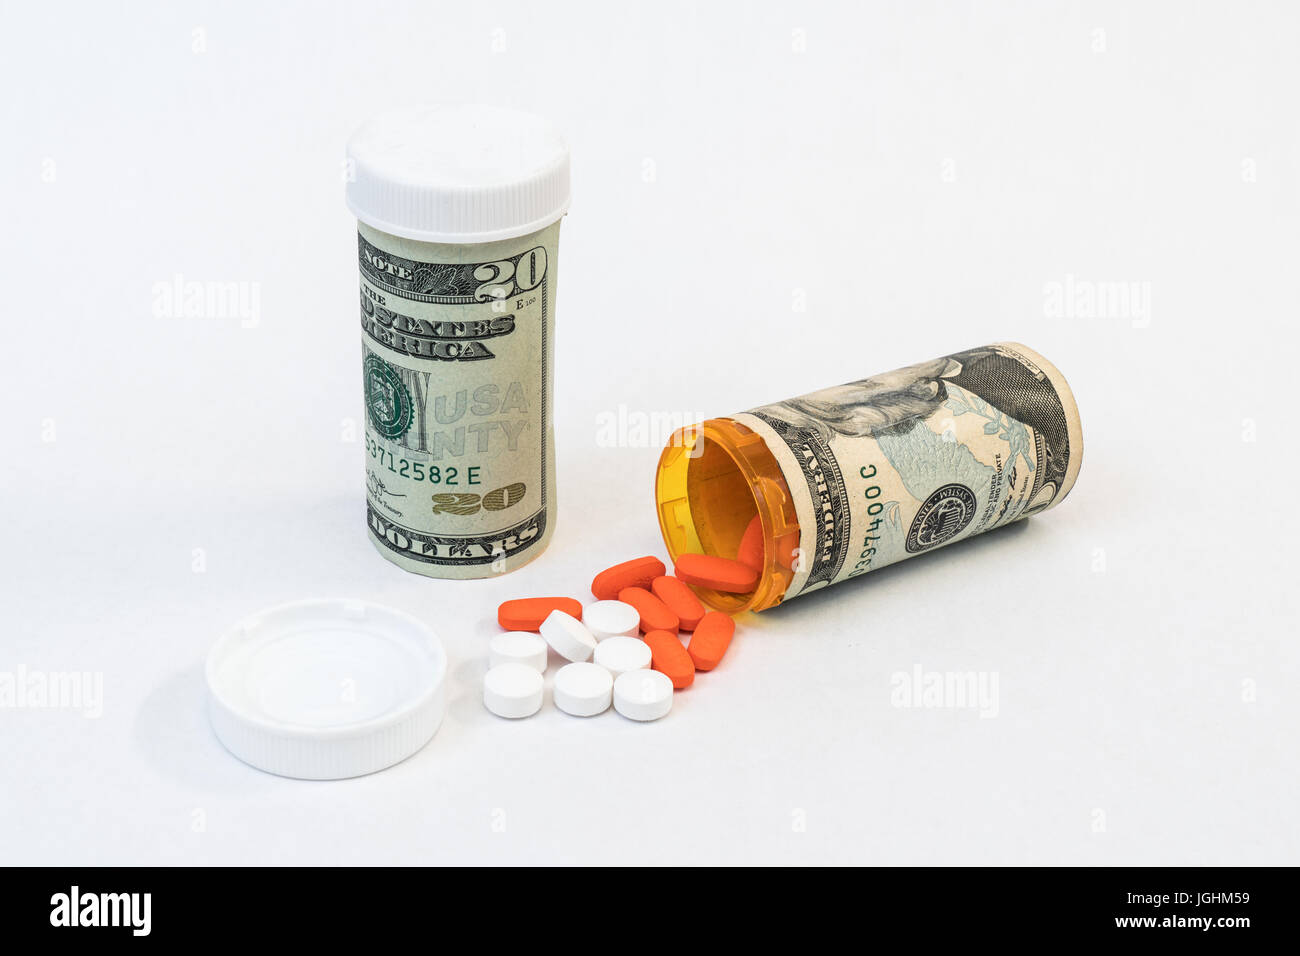 Botellas de medicamentos y píldoras con envuelto en dinero que significa un alto costo. Foto de stock